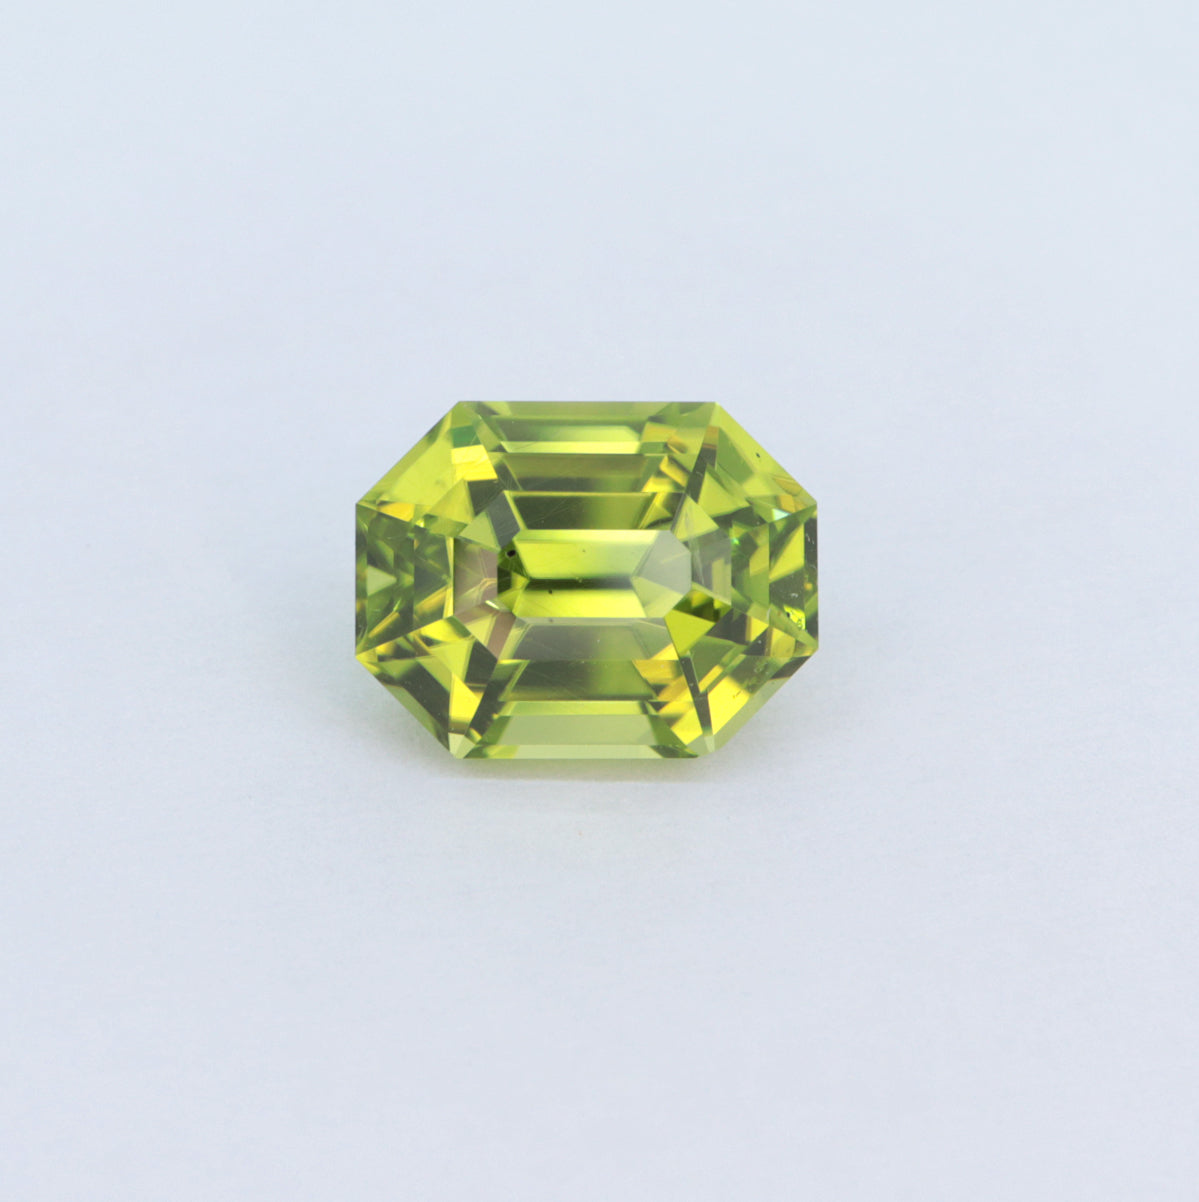 2.29ct Peridot Emerald cut